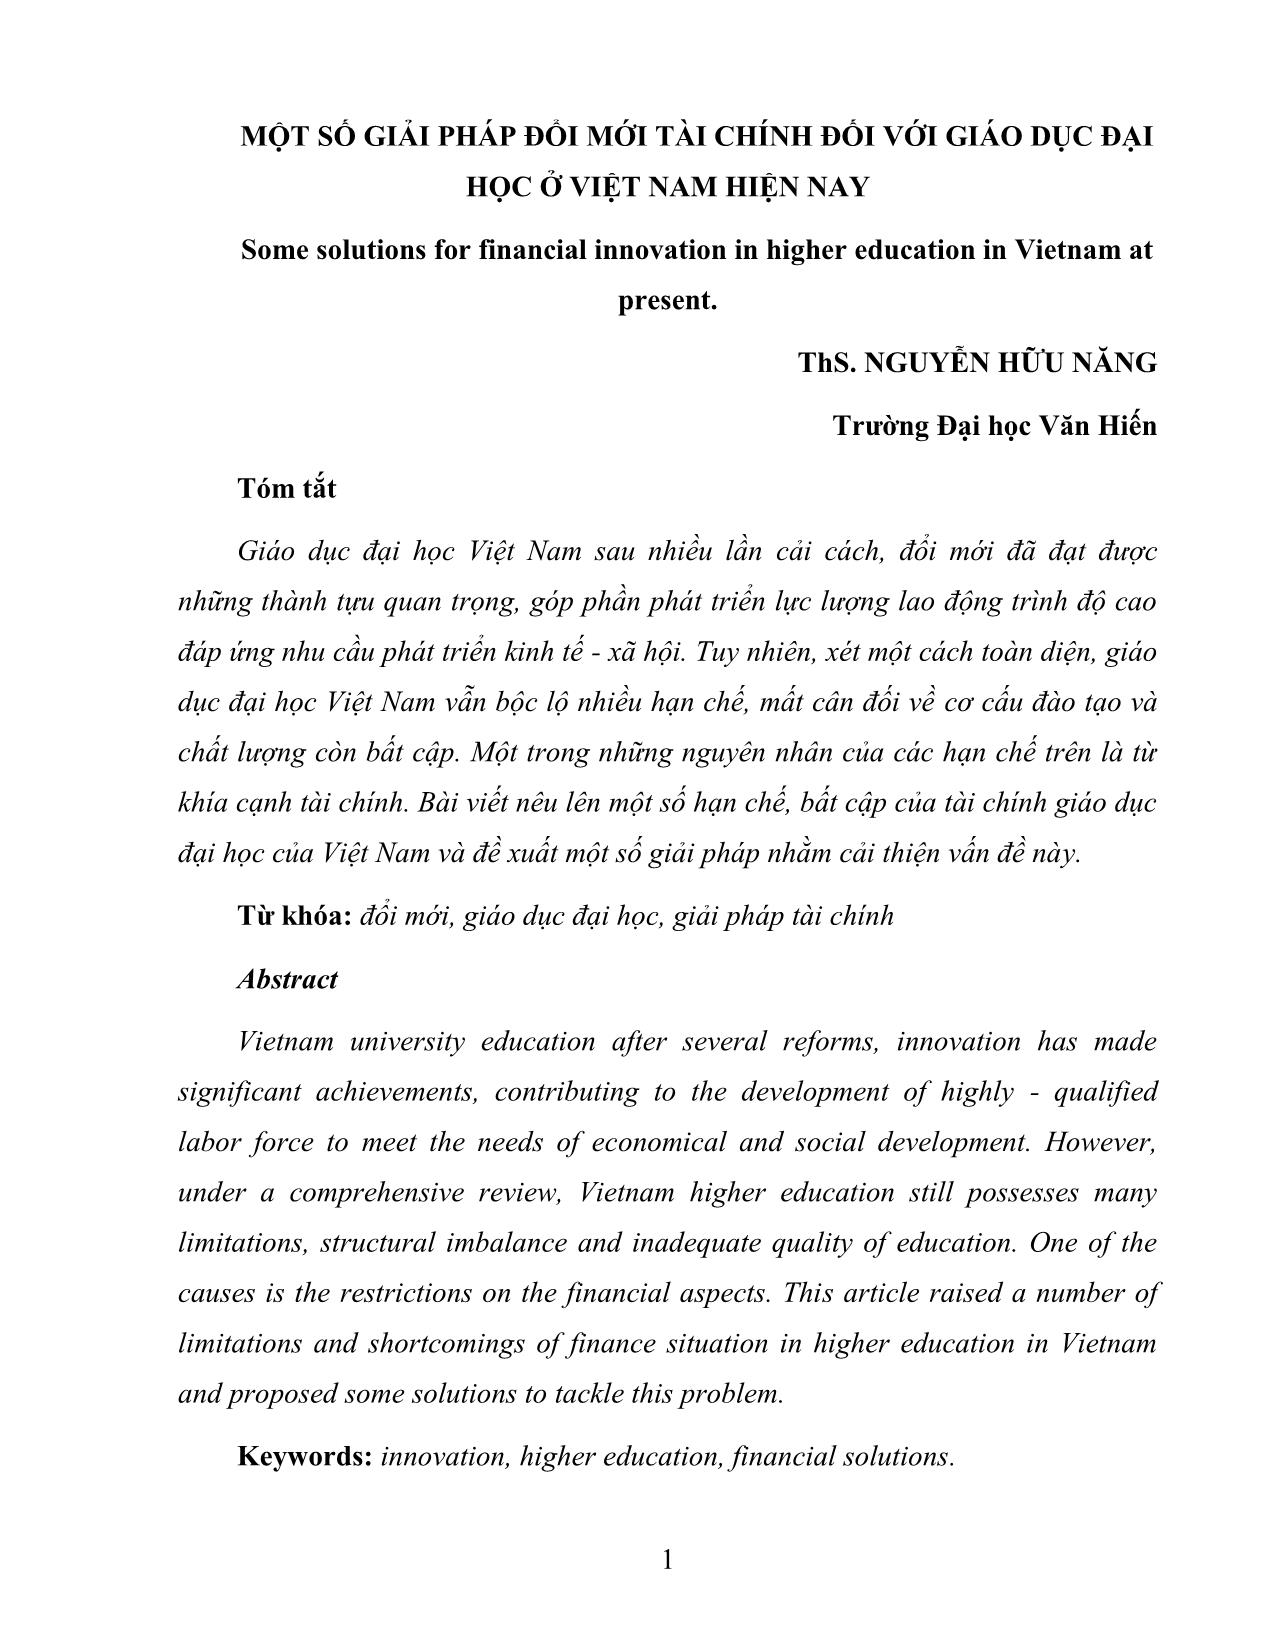 Một số giải pháp đổi mới tài chính đối với giáo dục đại học ở Việt Nam hiện nay trang 1